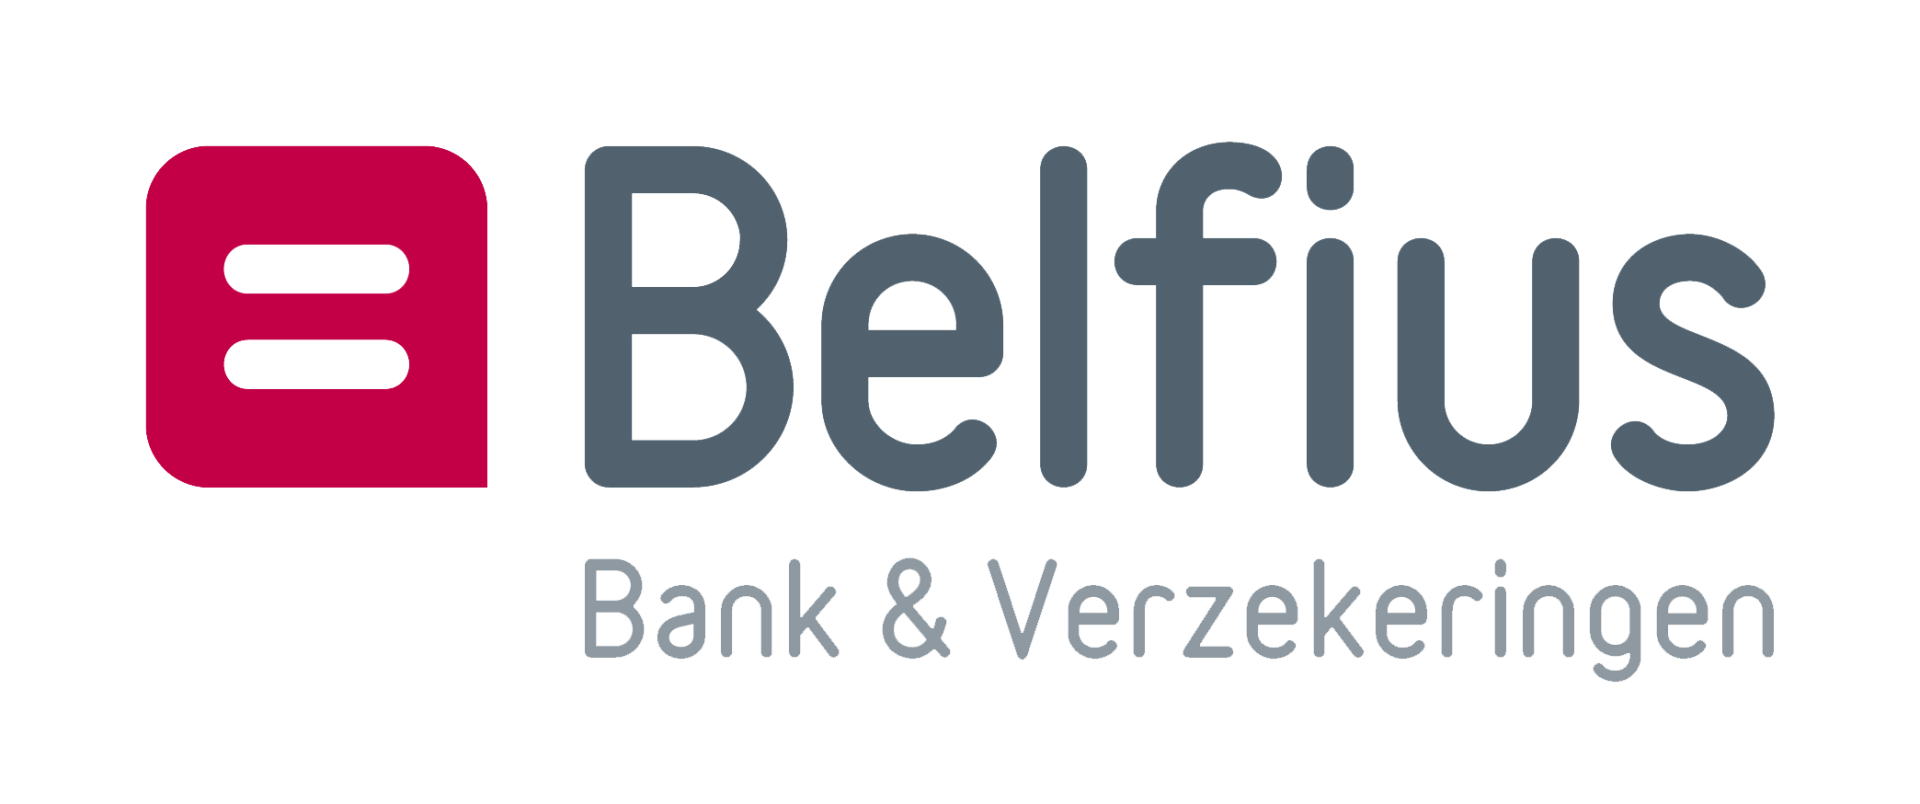 logo Belfius